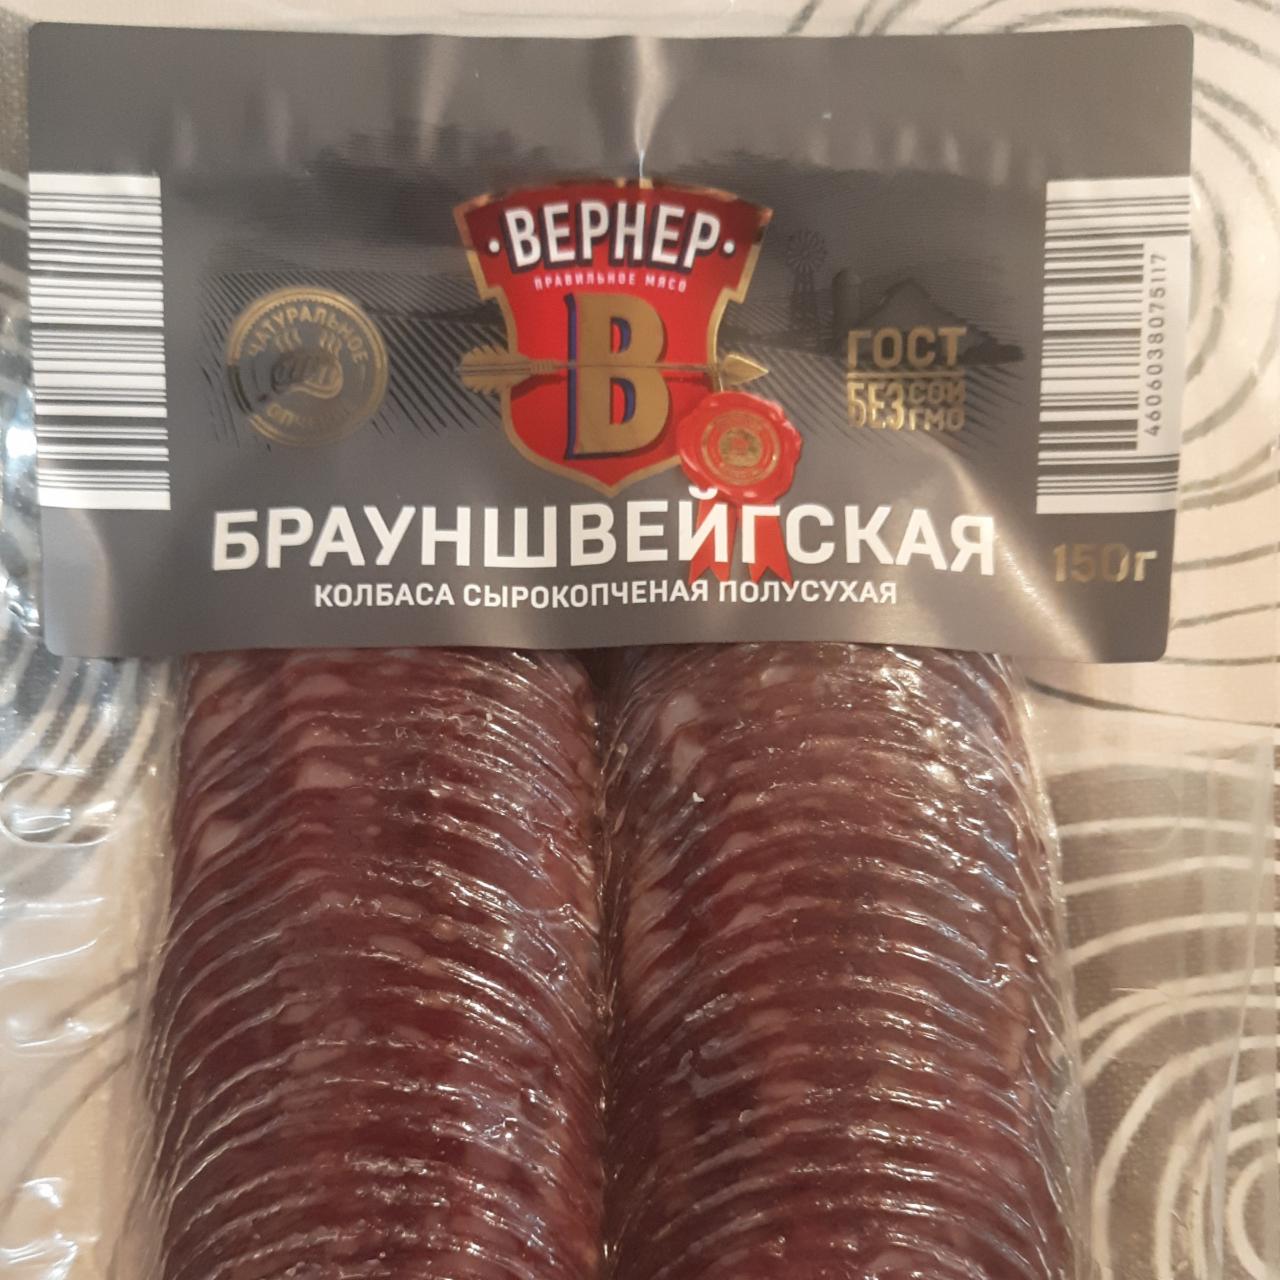 Фото - Брауншвейгская колбаса сырокопченая Bephep